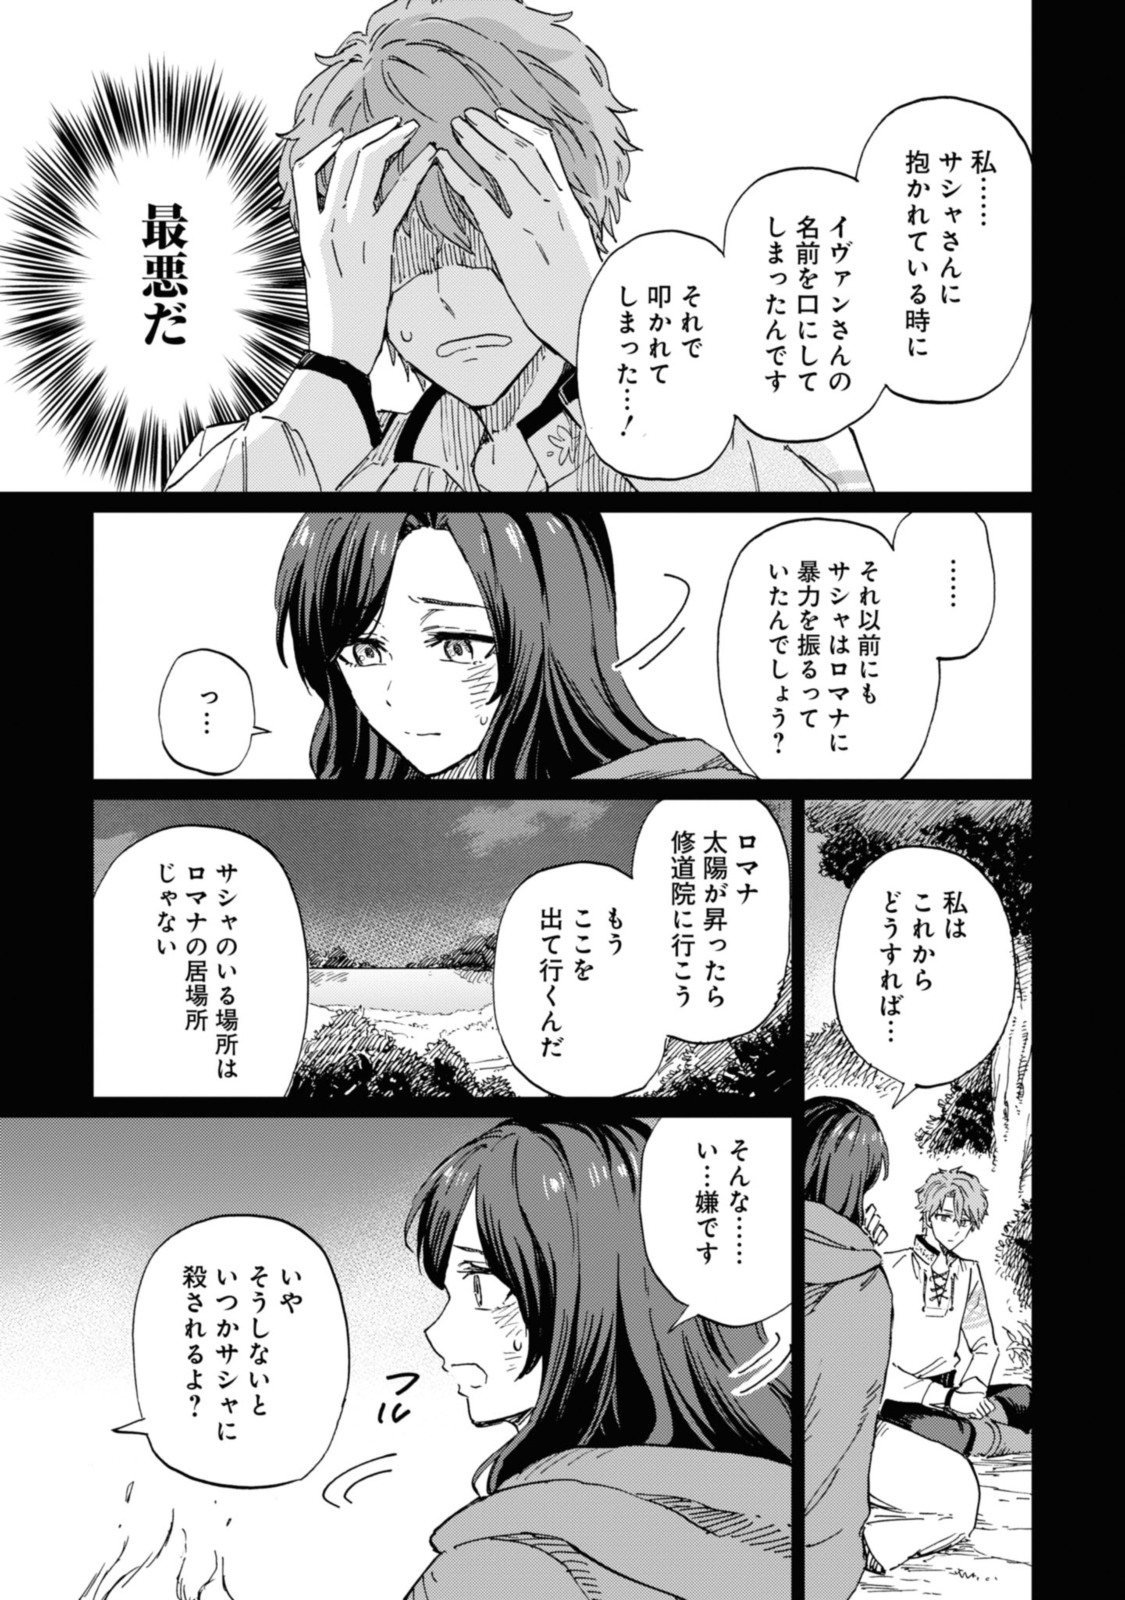 Youhou-ka to Mitsu Kusushi no Hanayome - Chapter 3.1 - Page 5